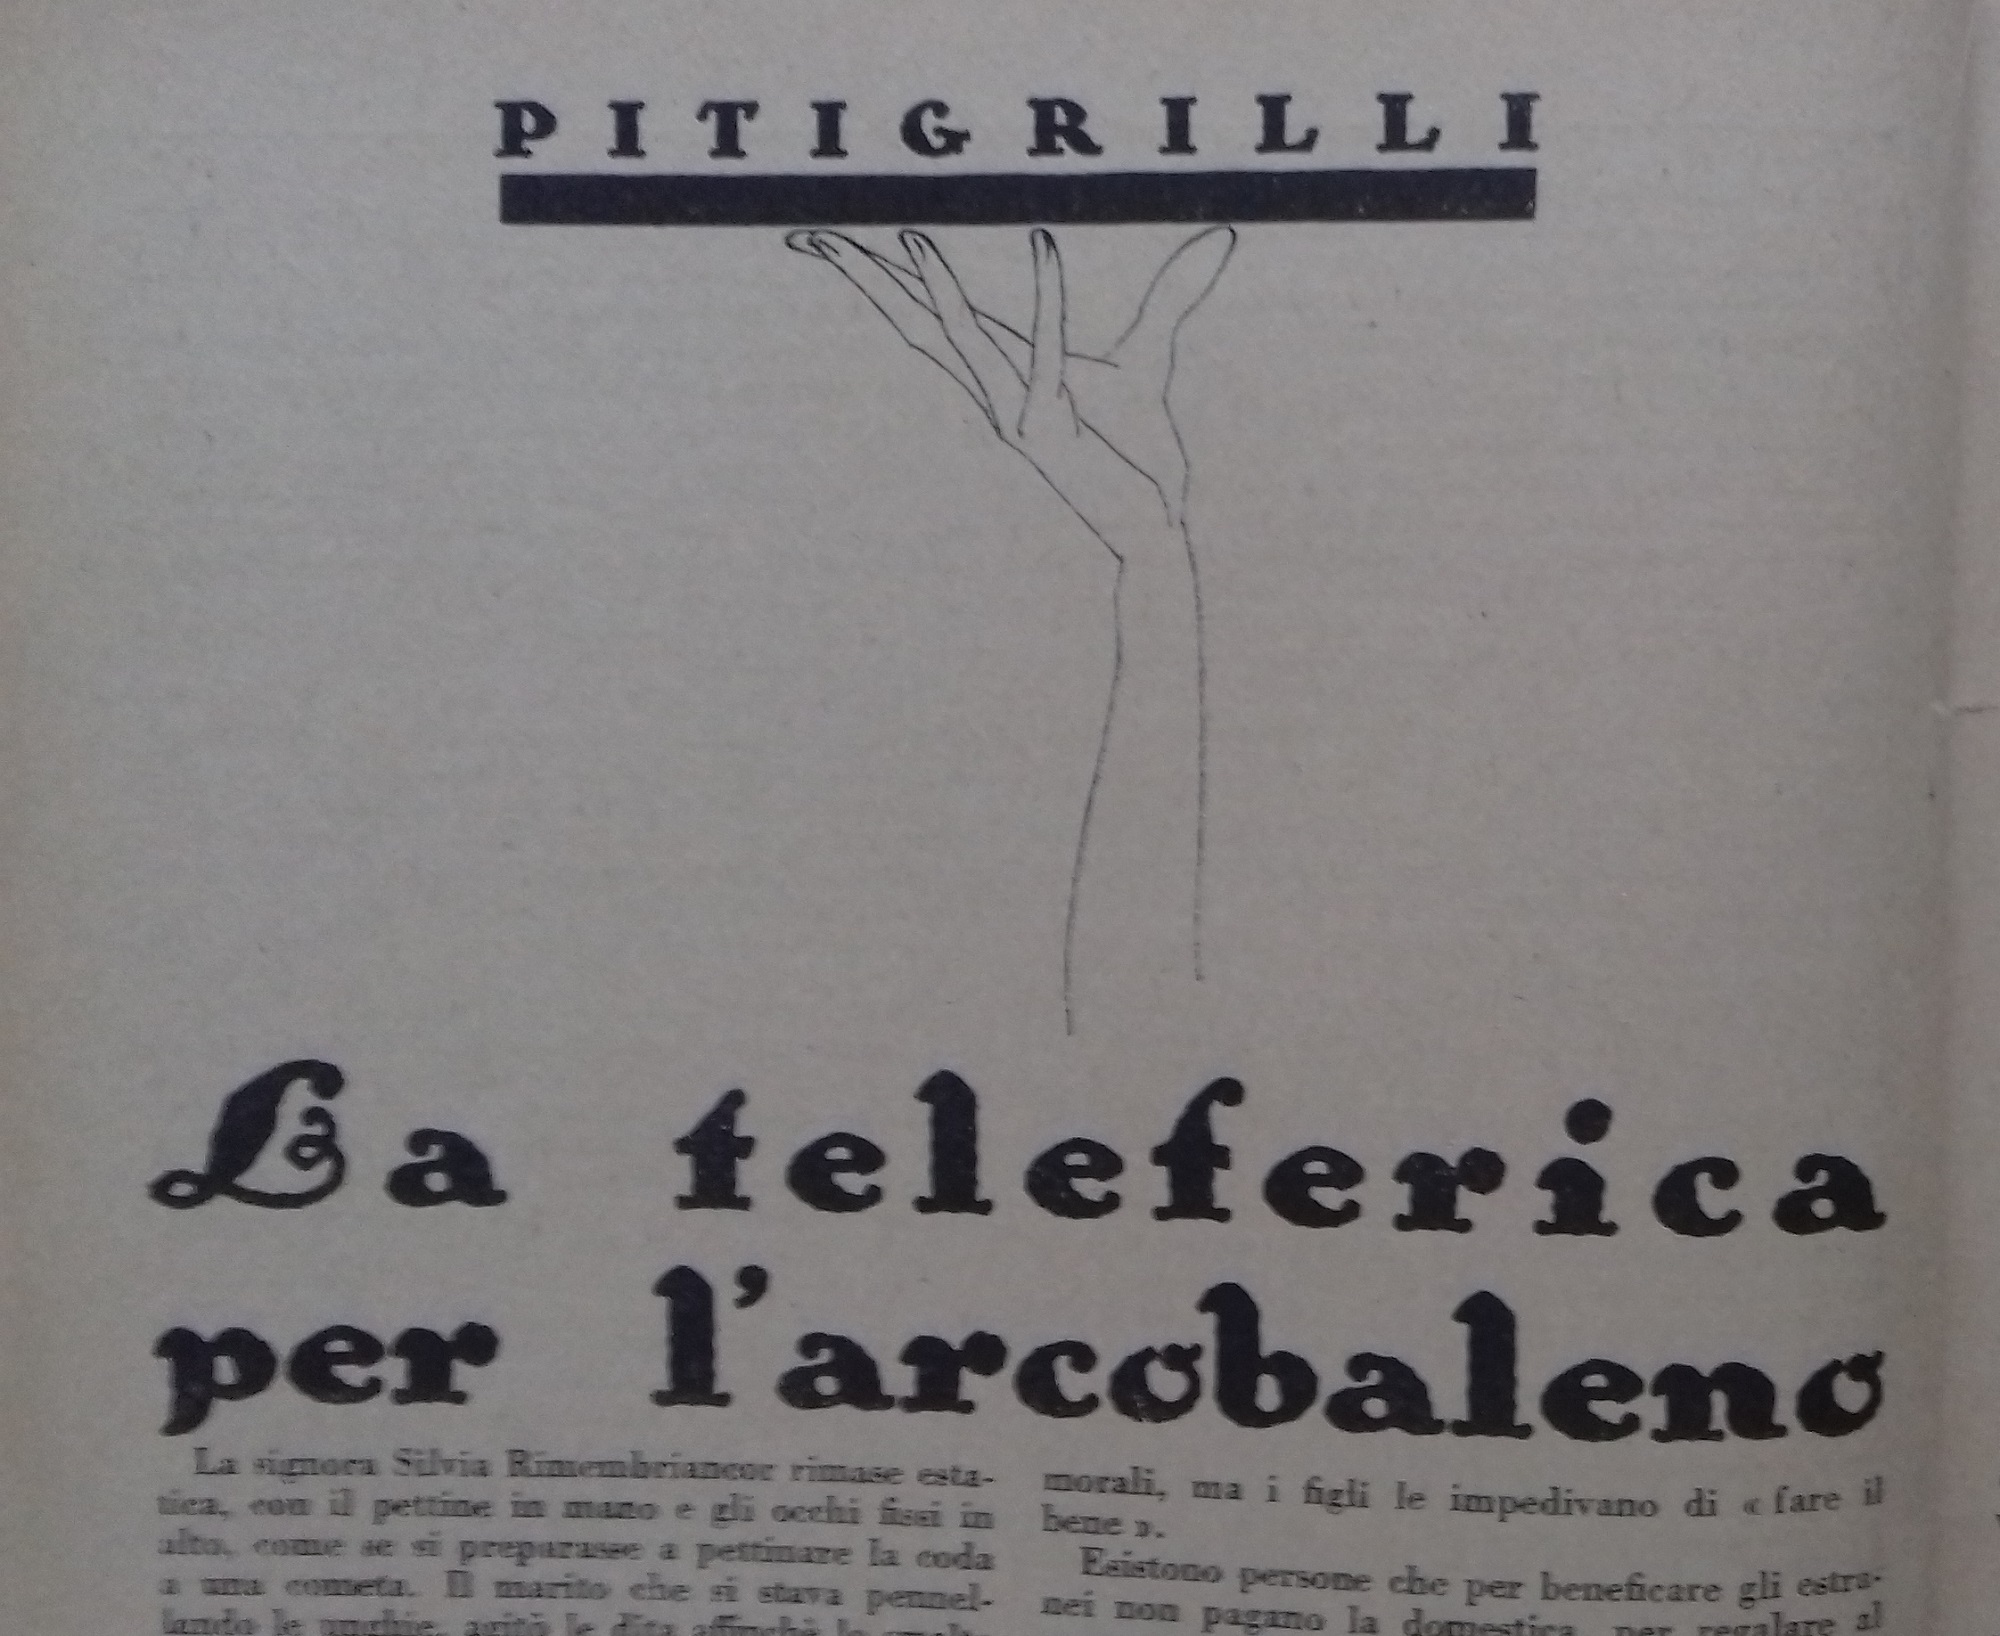 PITIGRILLI, LA TELEFERICA PER L'ARCOBALENO